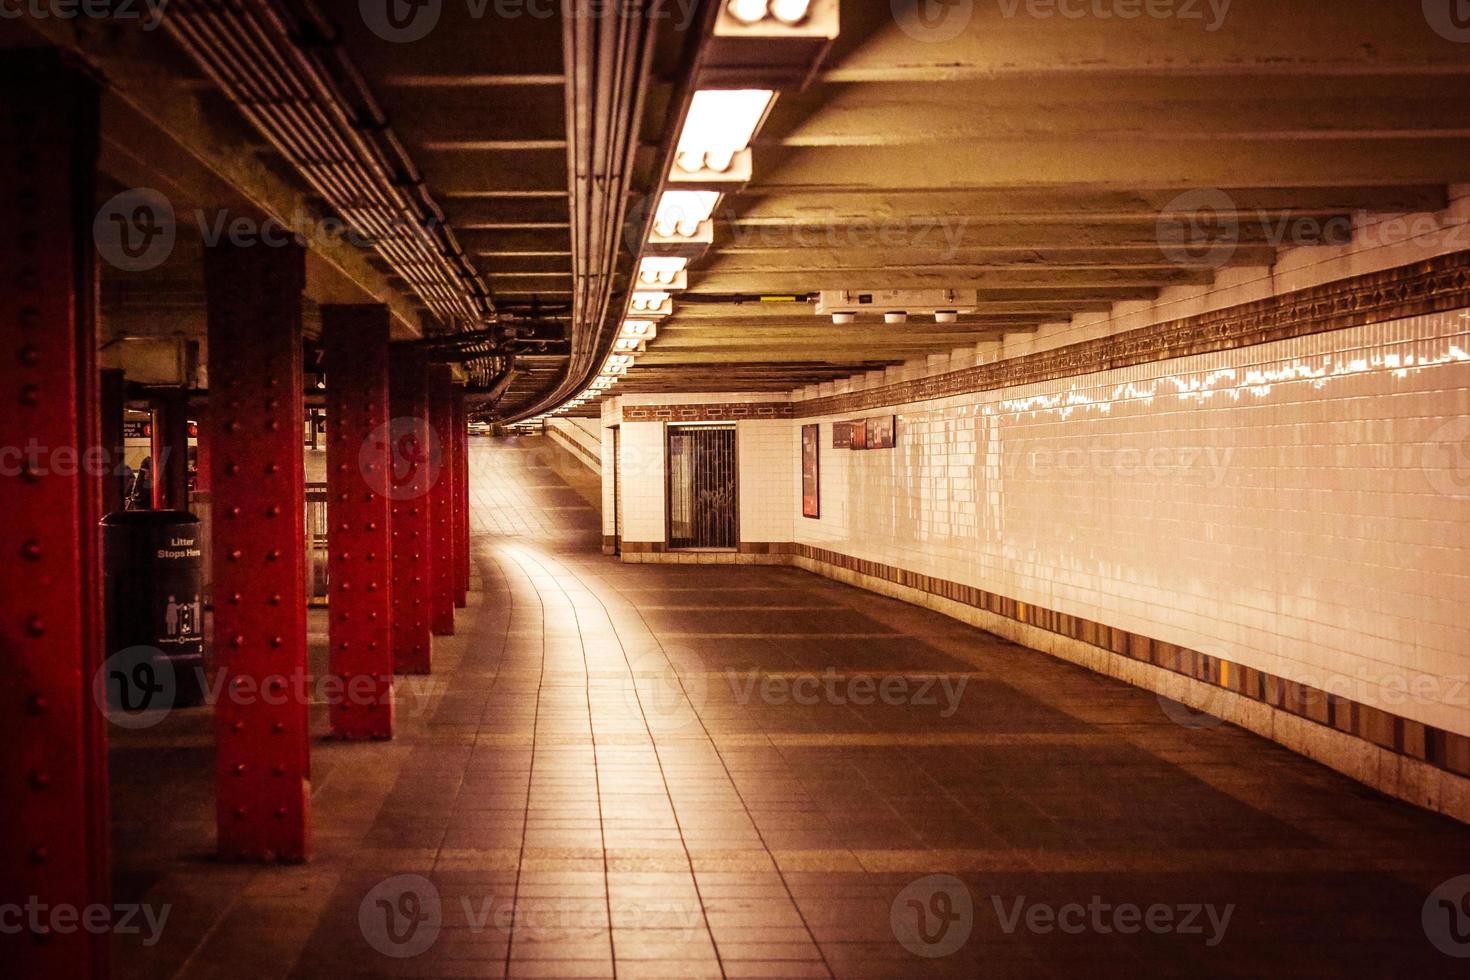 Subway in New York City!. So futuristic photo